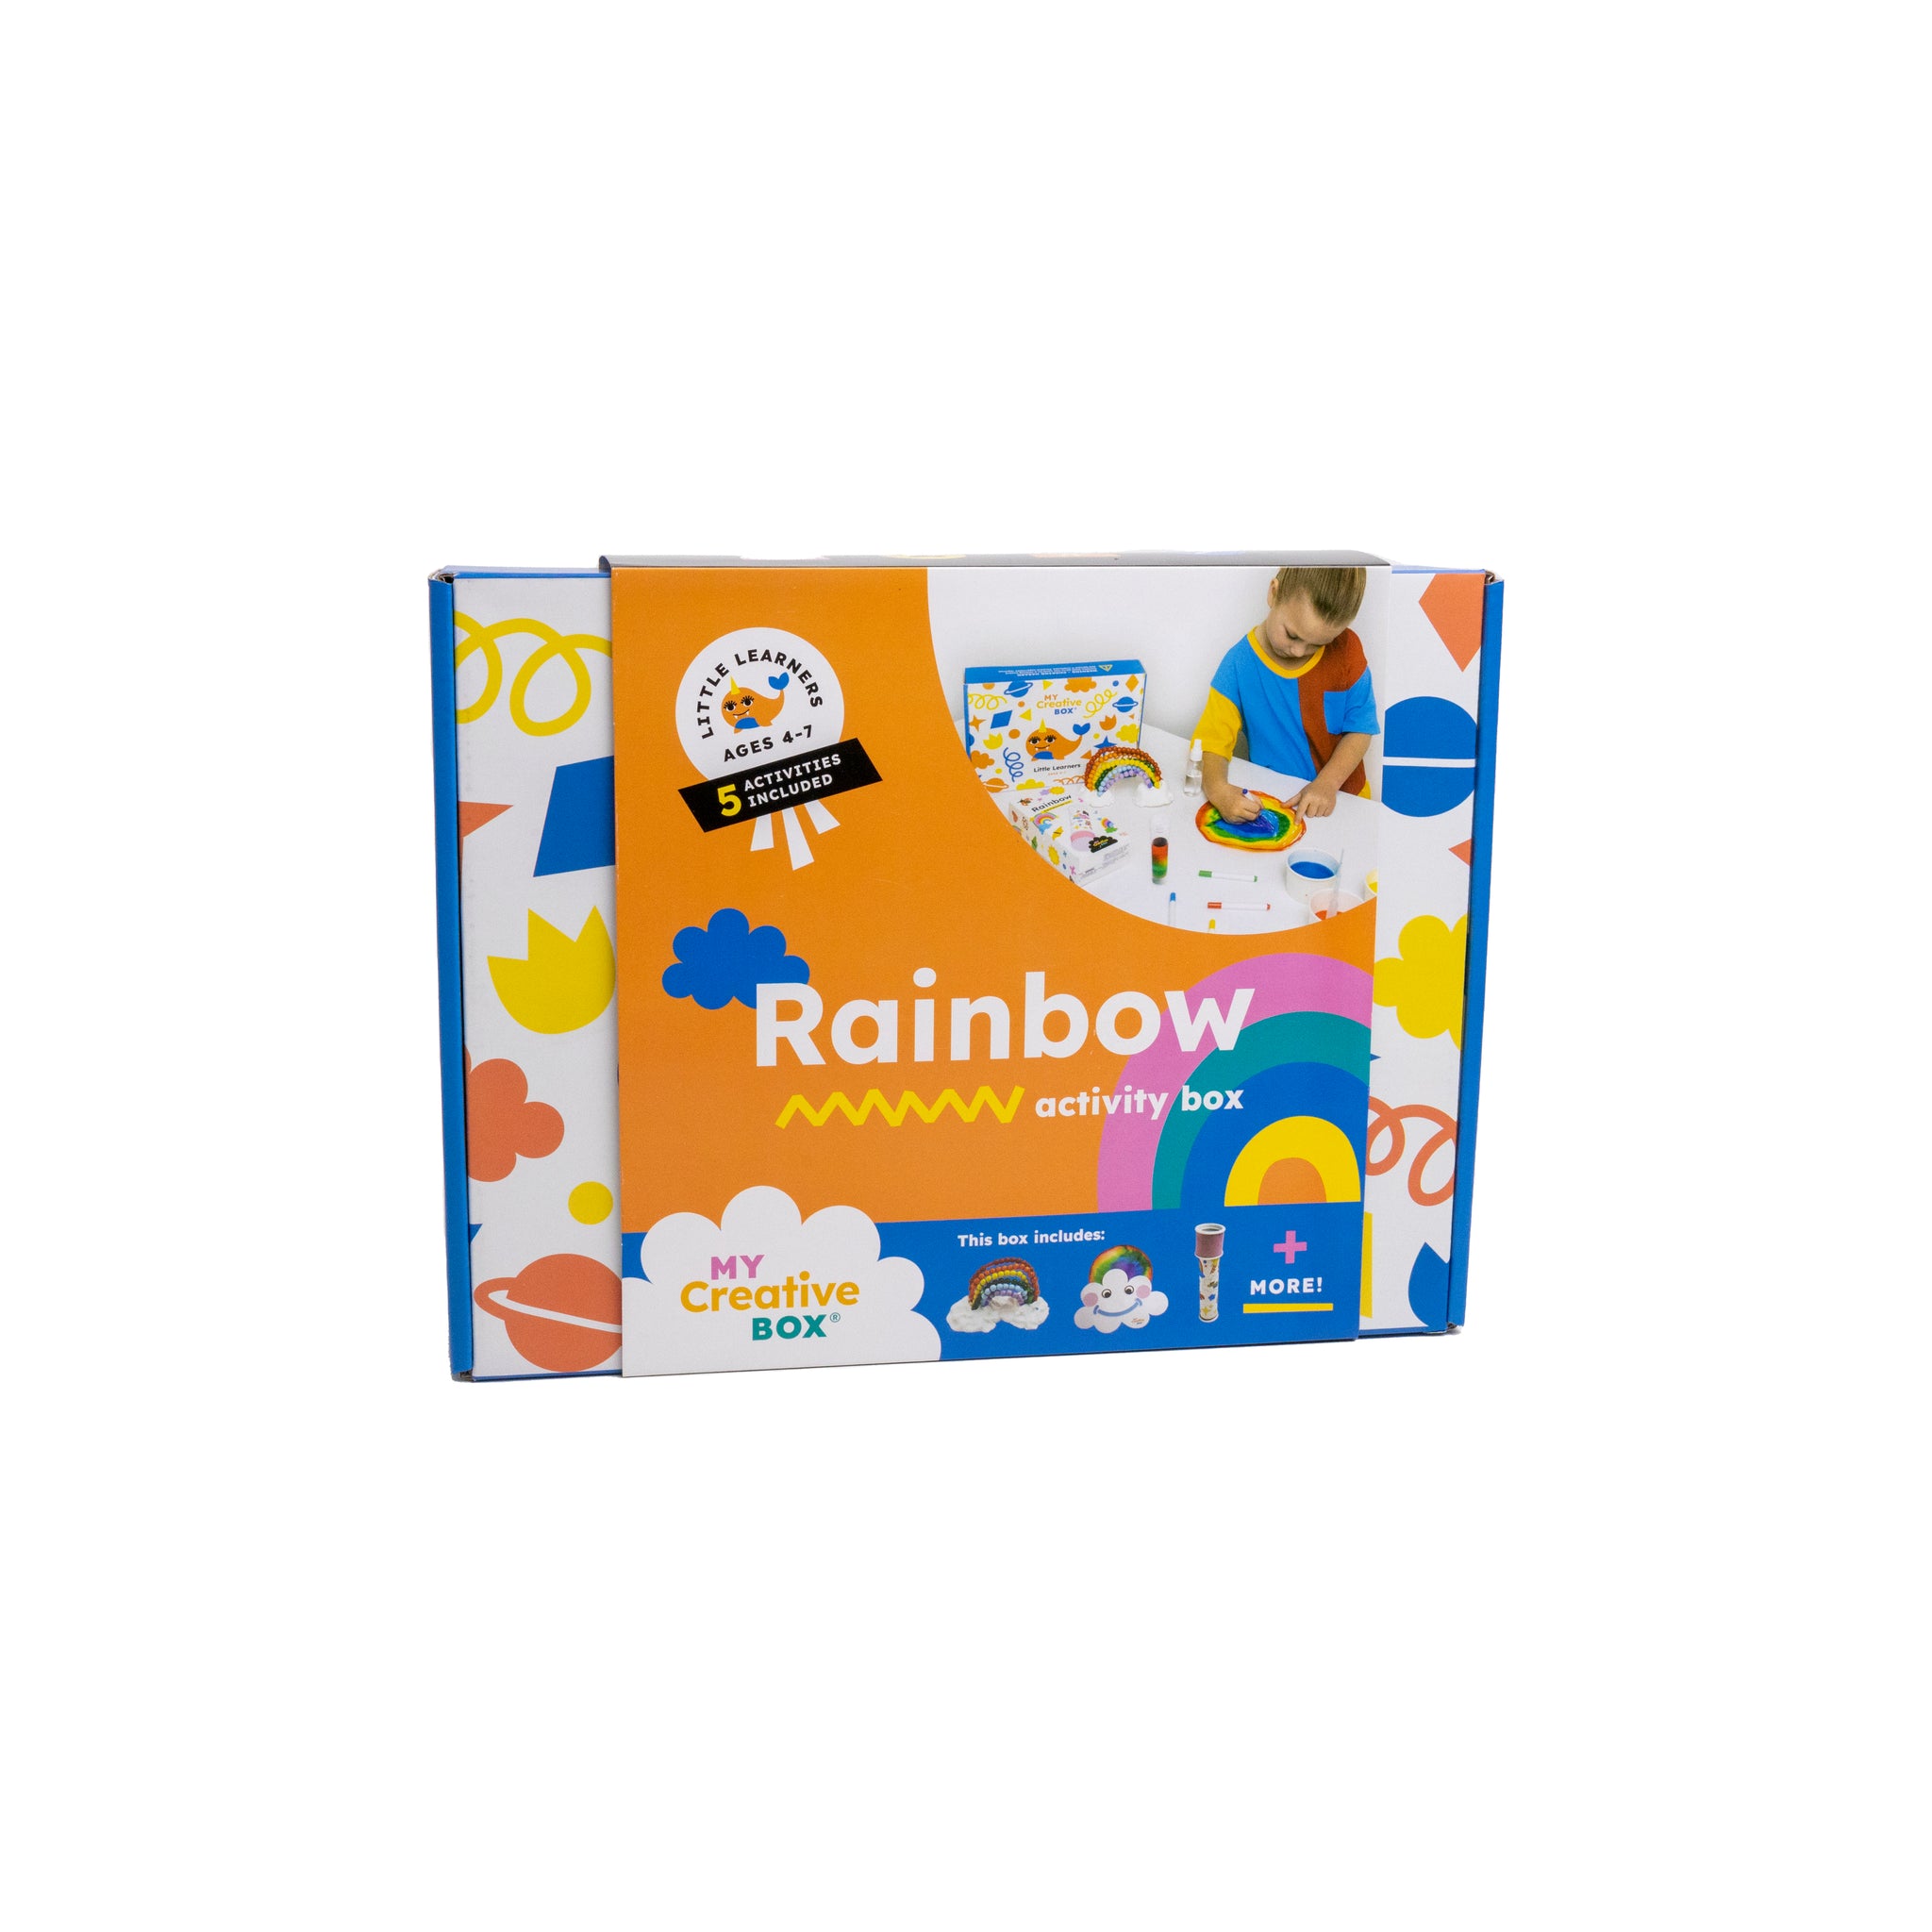 My Creative Box, Rainbow STEAM Fun